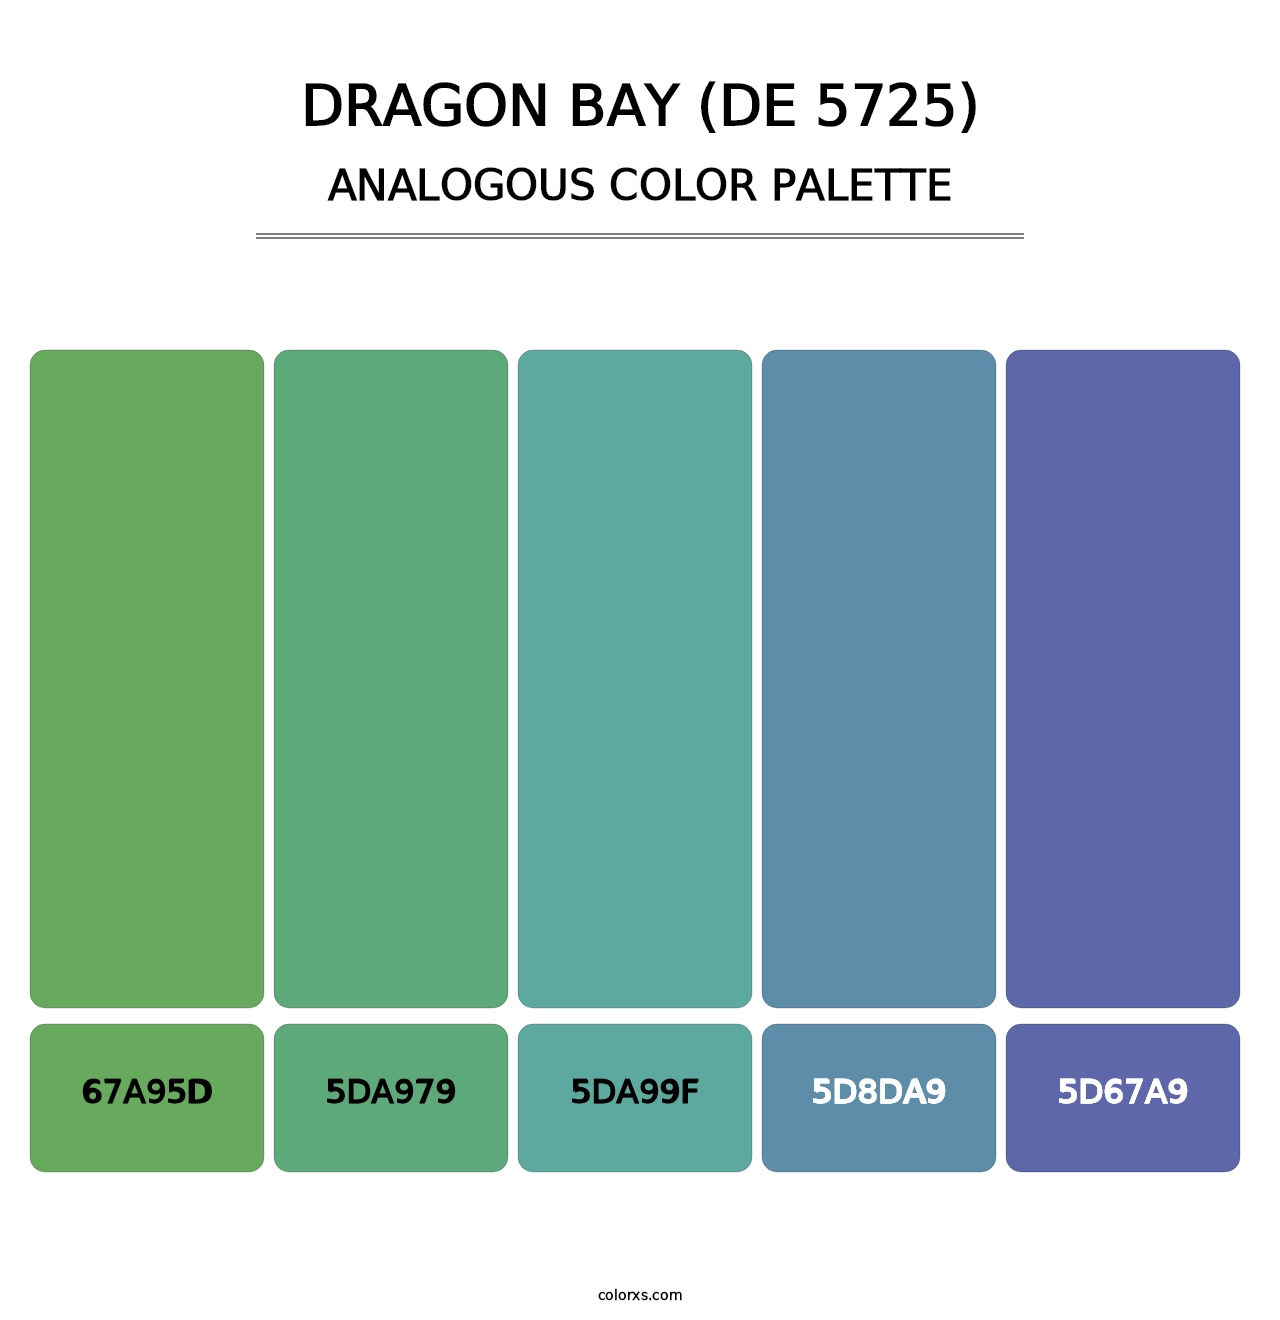 Dragon Bay (DE 5725) - Analogous Color Palette